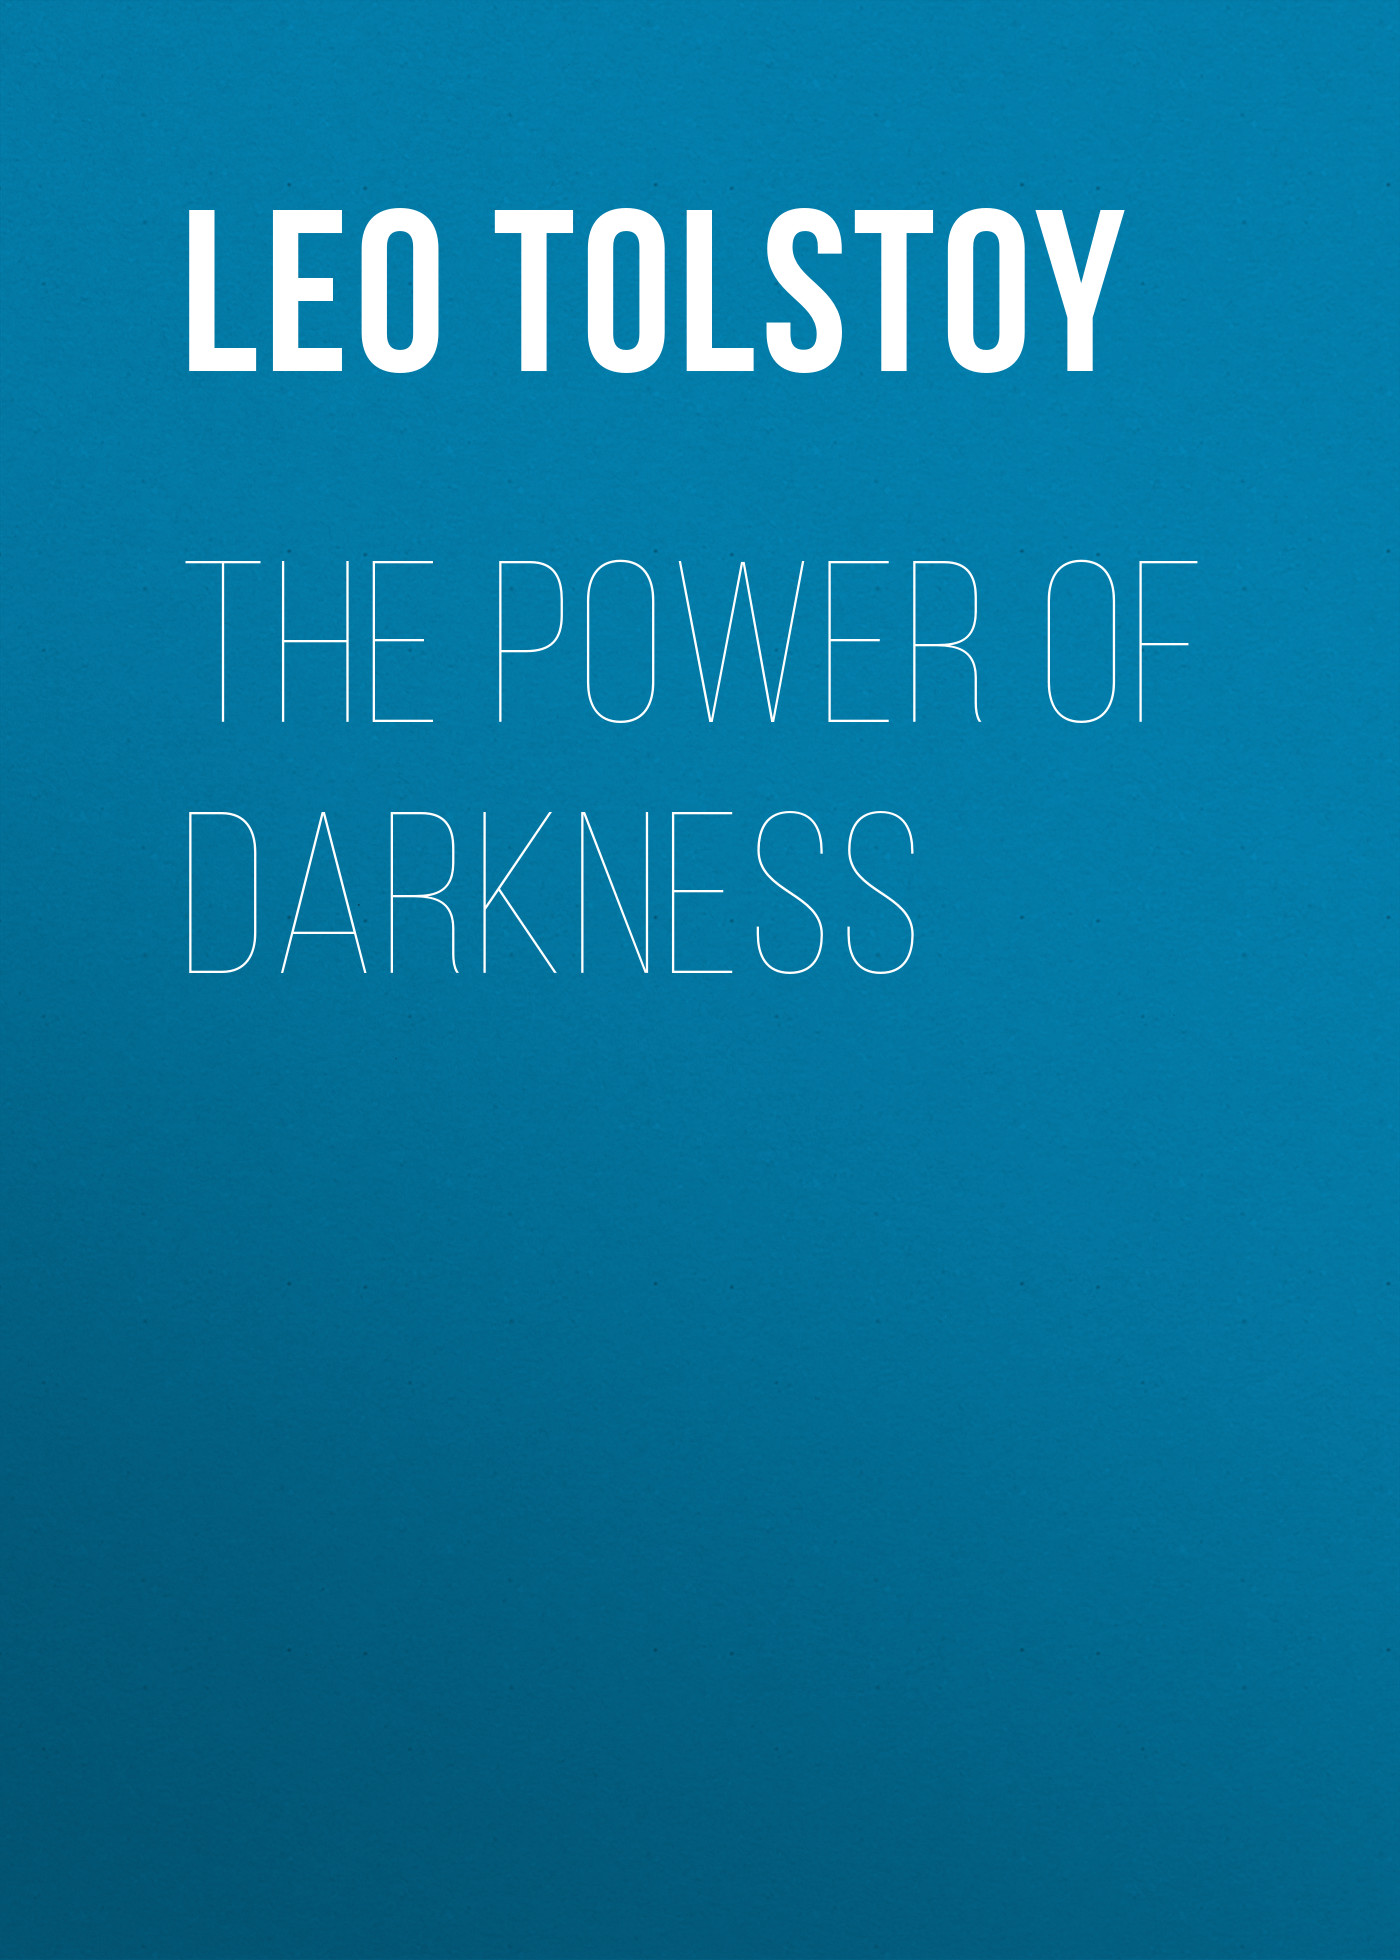 Книга The Power of Darkness из серии , созданная Leo Tolstoy, может относится к жанру Русская классика, Драматургия. Стоимость электронной книги The Power of Darkness с идентификатором 23156627 составляет 5.99 руб.